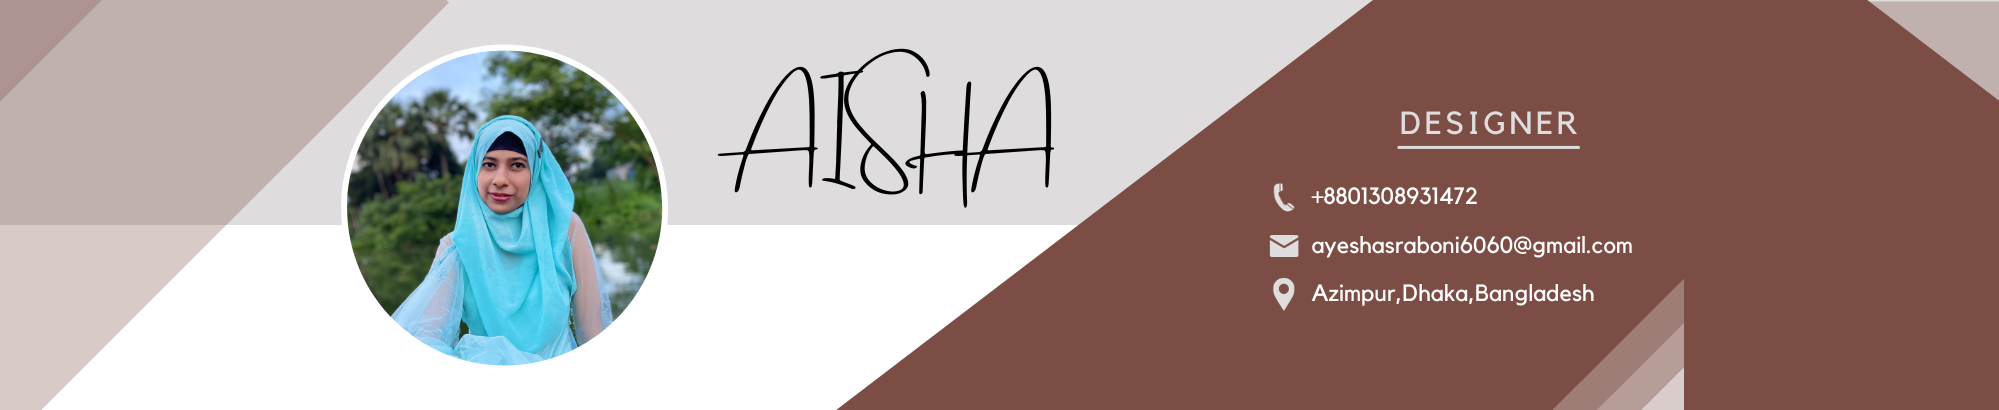 Aisha Siddika Sraboni のプロファイルバナー